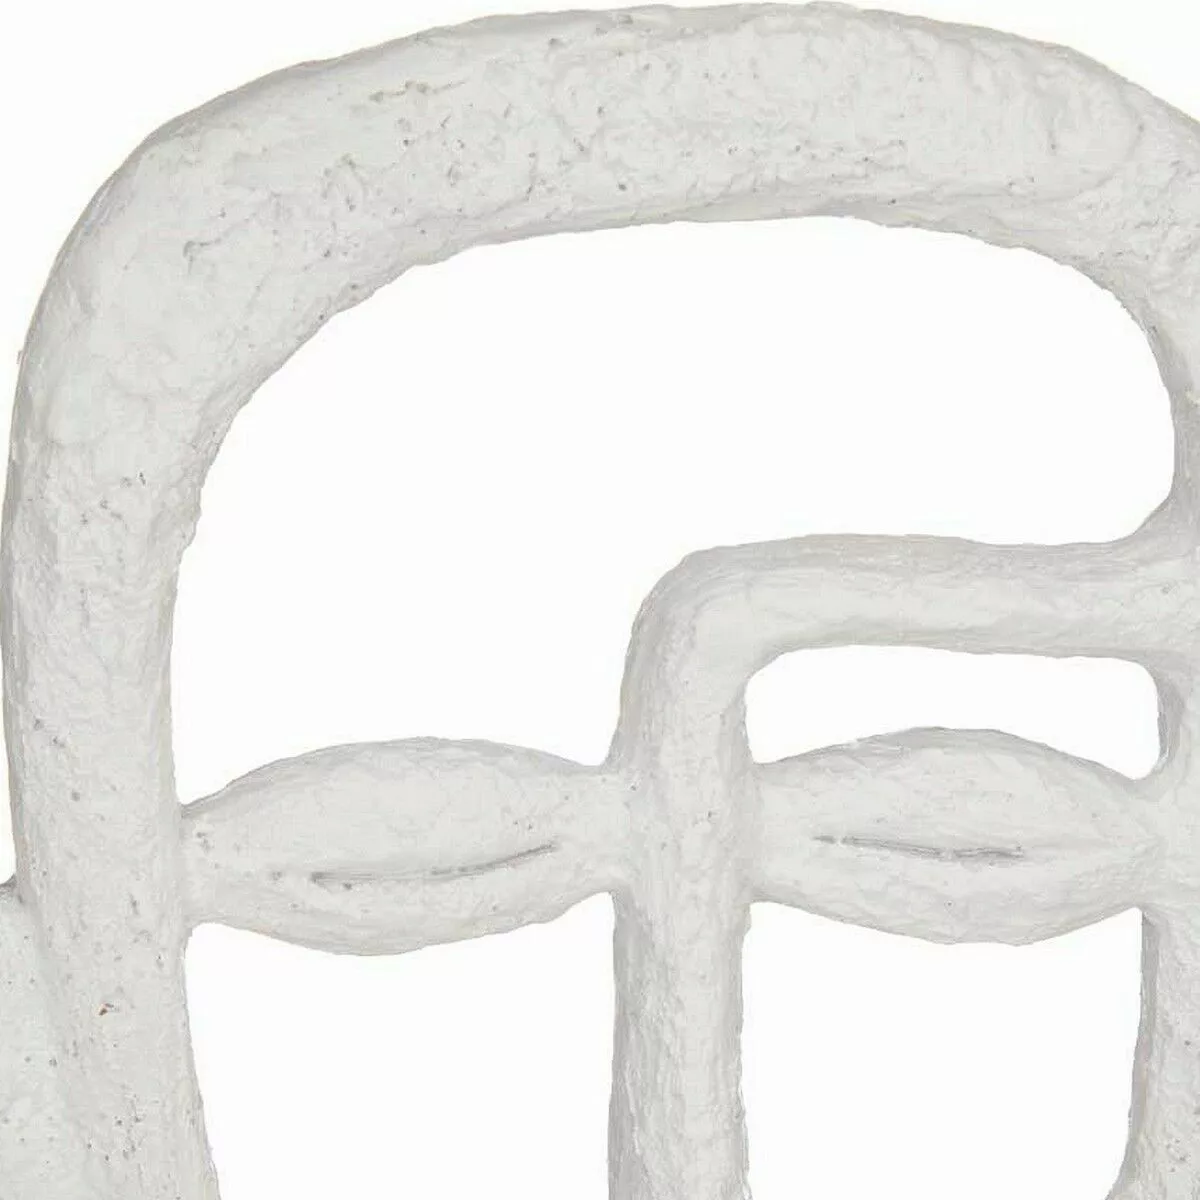 Deko-figur Gesicht Weiß Polyesterharz (19,5 X 38 X 10,5 Cm) günstig online kaufen